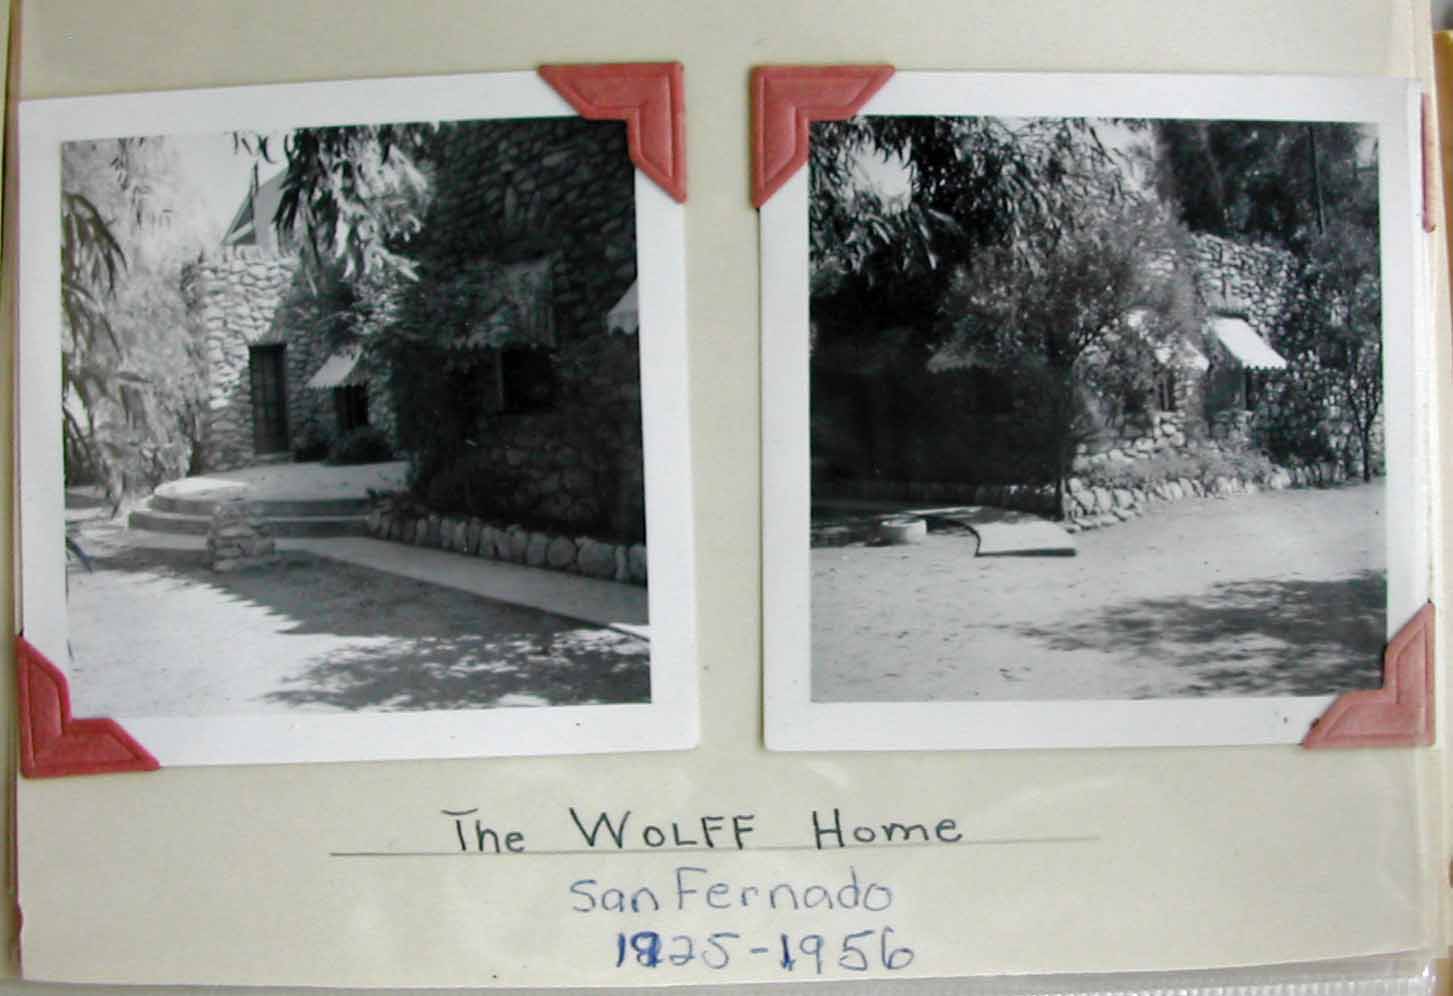 1940 San Fernando home A & B*